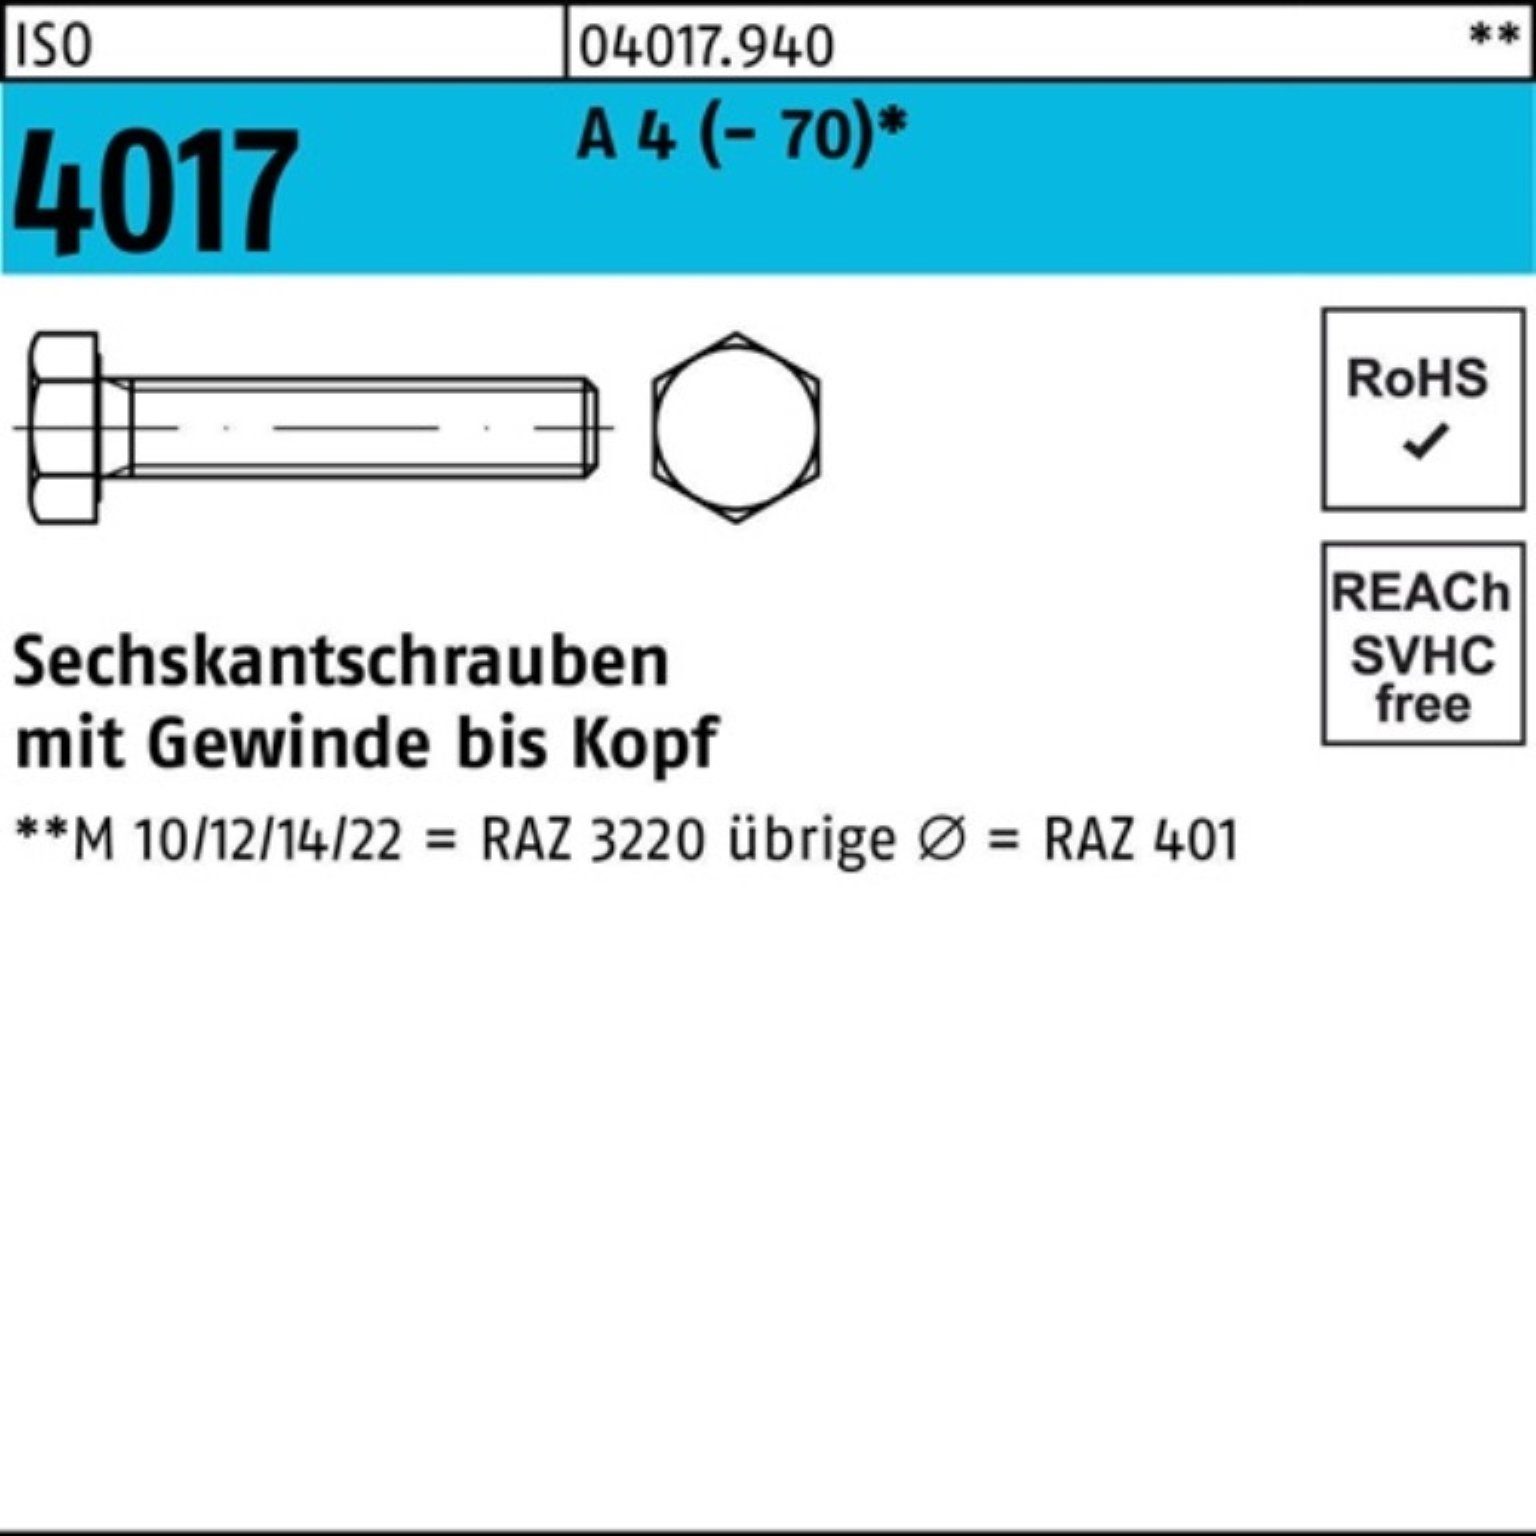 Bufab Sechskantschraube 100er Pack Sechskantschraube ISO 4017 VG M12x 200 A 4 (70) 1 Stück